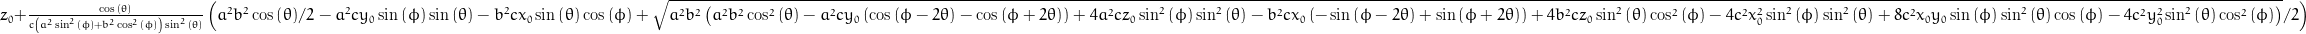 z_{0} + \frac{\cos{\left (\theta \right )}}{c \left(a^{2} \sin^{2}{\left (\phi \right )} + b^{2} \cos^{2}{\left (\phi \right )}\right) \sin^{2}{\left (\theta \right )}} \left(\frac{a^{2} b^{2}}{2} \cos{\left (\theta \right )} - a^{2} c y_{0} \sin{\left (\phi \right )} \sin{\left (\theta \right )} - b^{2} c x_{0} \sin{\left (\theta \right )} \cos{\left (\phi \right )} + \frac{1}{2} \sqrt{a^{2} b^{2} \left(a^{2} b^{2} \cos^{2}{\left (\theta \right )} - a^{2} c y_{0} \left(\cos{\left (\phi - 2 \theta \right )} - \cos{\left (\phi + 2 \theta \right )}\right) + 4 a^{2} c z_{0} \sin^{2}{\left (\phi \right )} \sin^{2}{\left (\theta \right )} - b^{2} c x_{0} \left(- \sin{\left (\phi - 2 \theta \right )} + \sin{\left (\phi + 2 \theta \right )}\right) + 4 b^{2} c z_{0} \sin^{2}{\left (\theta \right )} \cos^{2}{\left (\phi \right )} - 4 c^{2} x_{0}^{2} \sin^{2}{\left (\phi \right )} \sin^{2}{\left (\theta \right )} + 8 c^{2} x_{0} y_{0} \sin{\left (\phi \right )} \sin^{2}{\left (\theta \right )} \cos{\left (\phi \right )} - 4 c^{2} y_{0}^{2} \sin^{2}{\left (\theta \right )} \cos^{2}{\left (\phi \right )}\right)}\right)